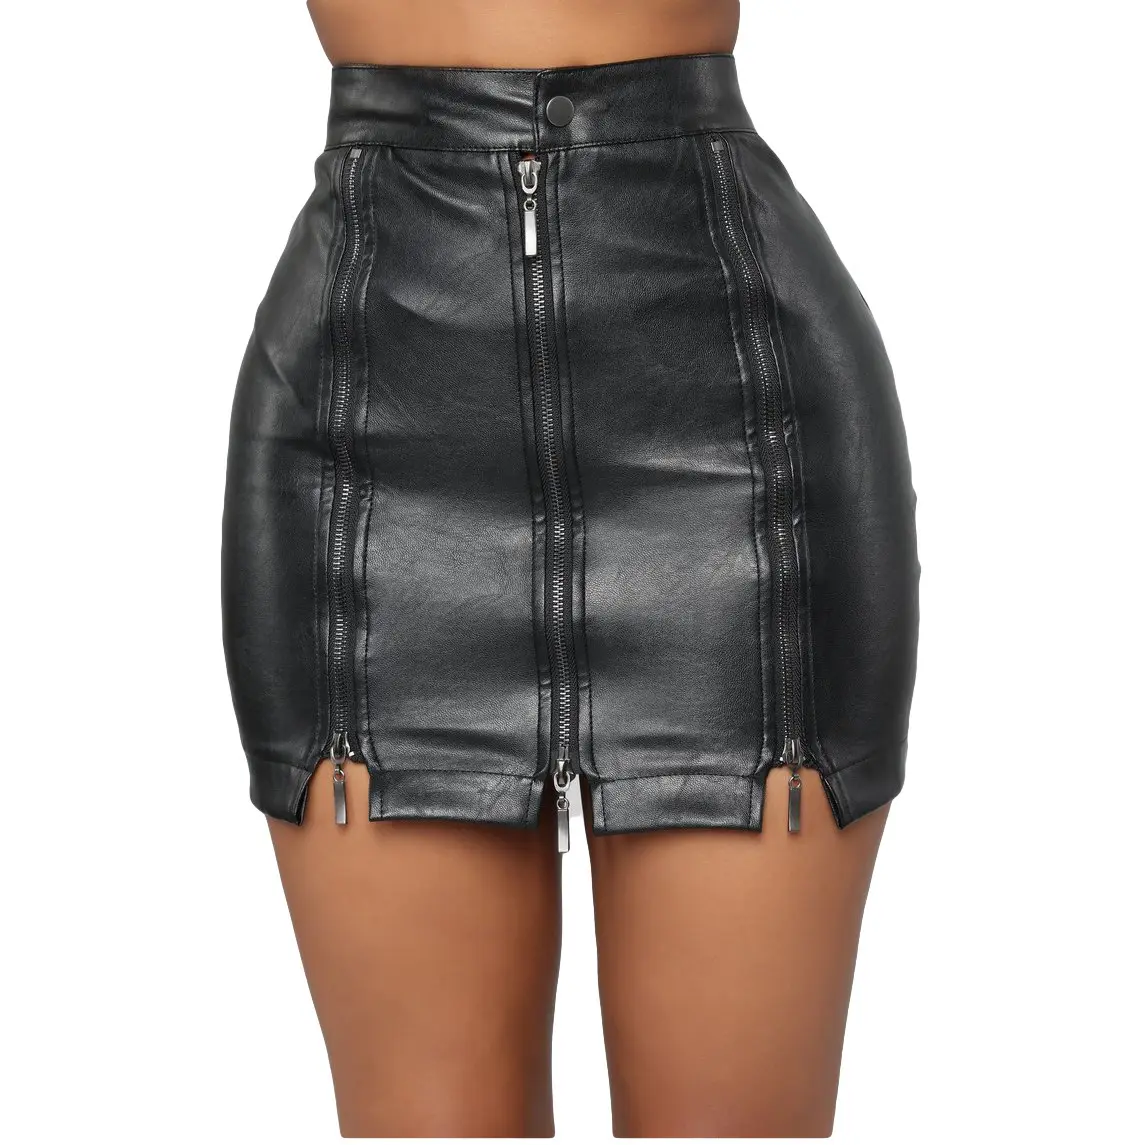 2022 summer new high waist hip skirt nightclub PU leather zipper patchwork skirt sexy black short skirt